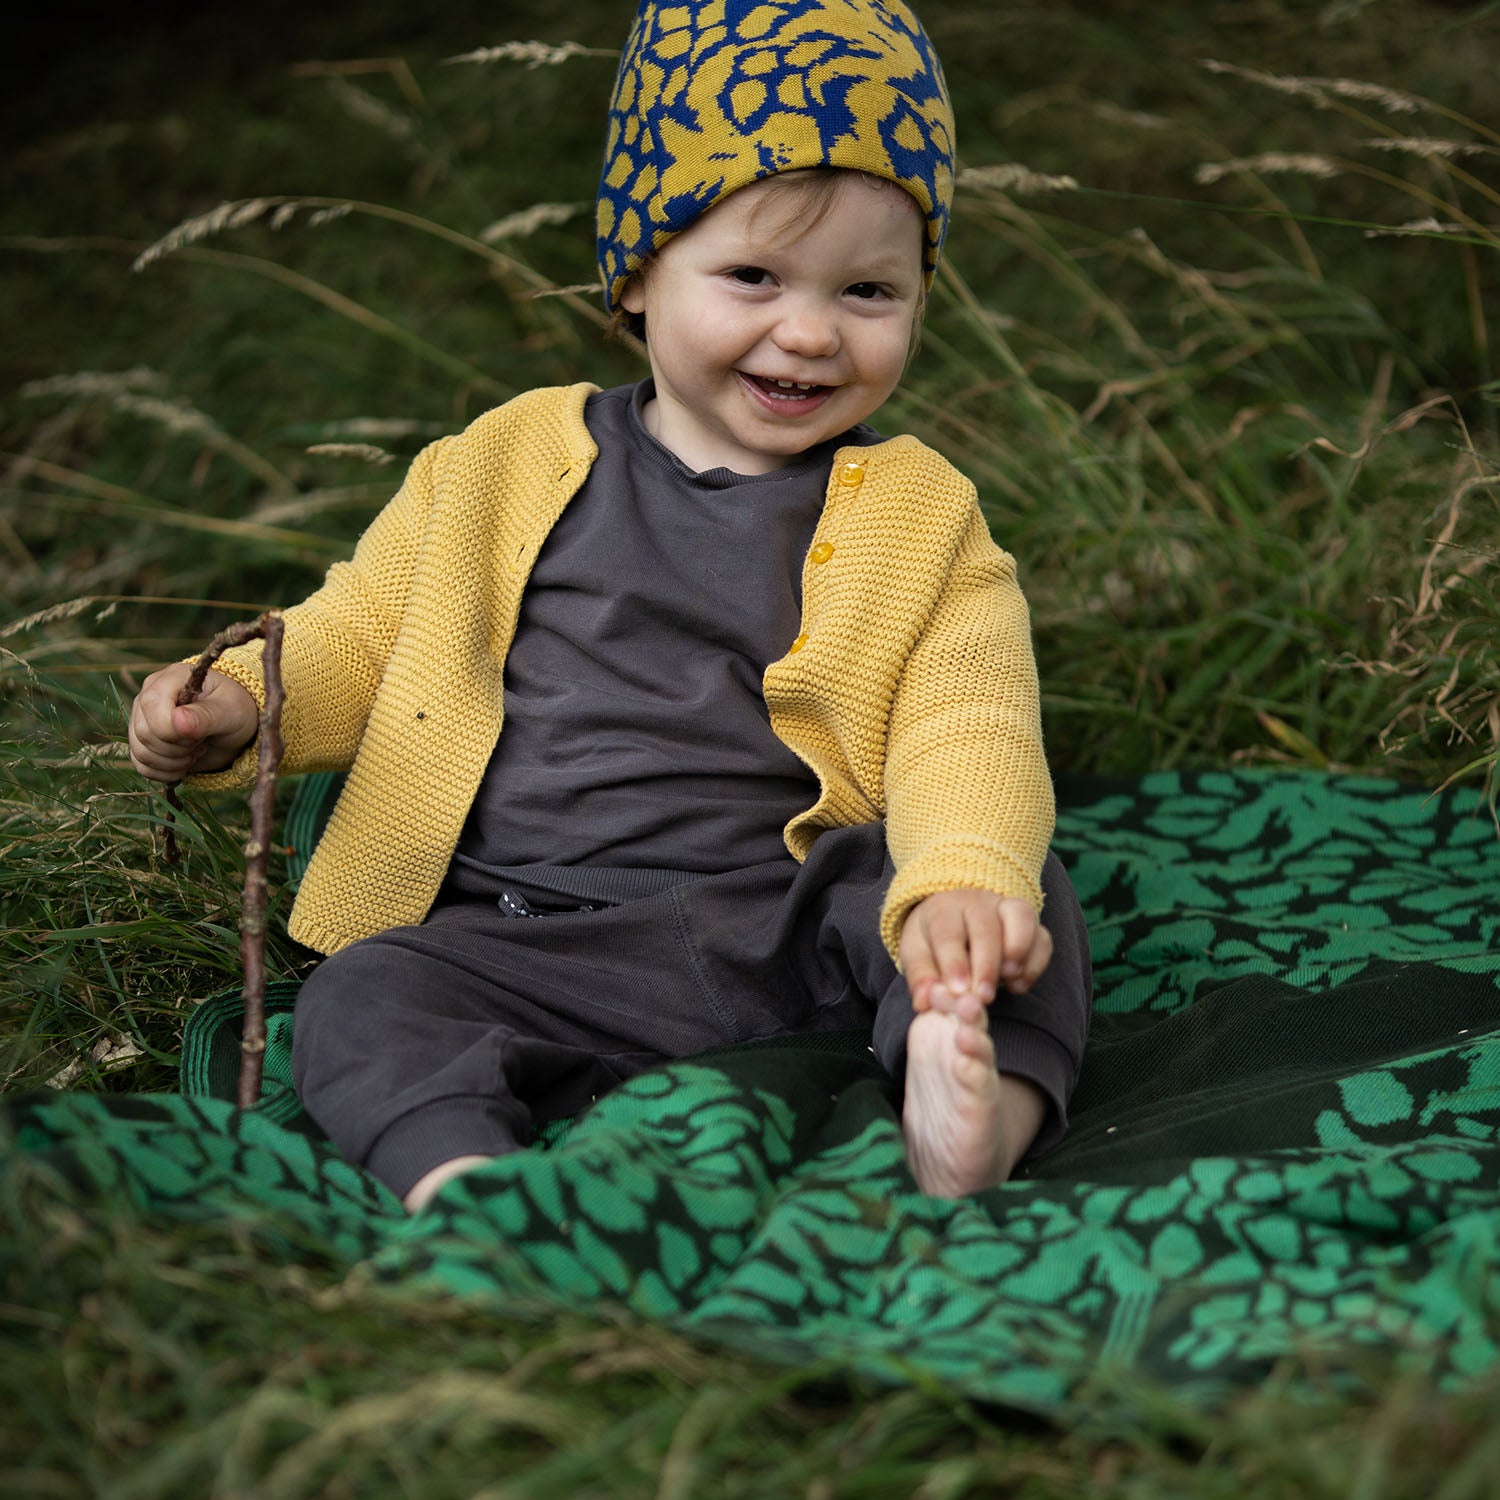 Personalisierte Babydecke Iris aus Baumwolle mit Kaschmir in Moosgrün und Jadegrün. Das ideale Geschenk zur Geburt oder Taufe individuell personalisierbar mit dem Namen des Kindes